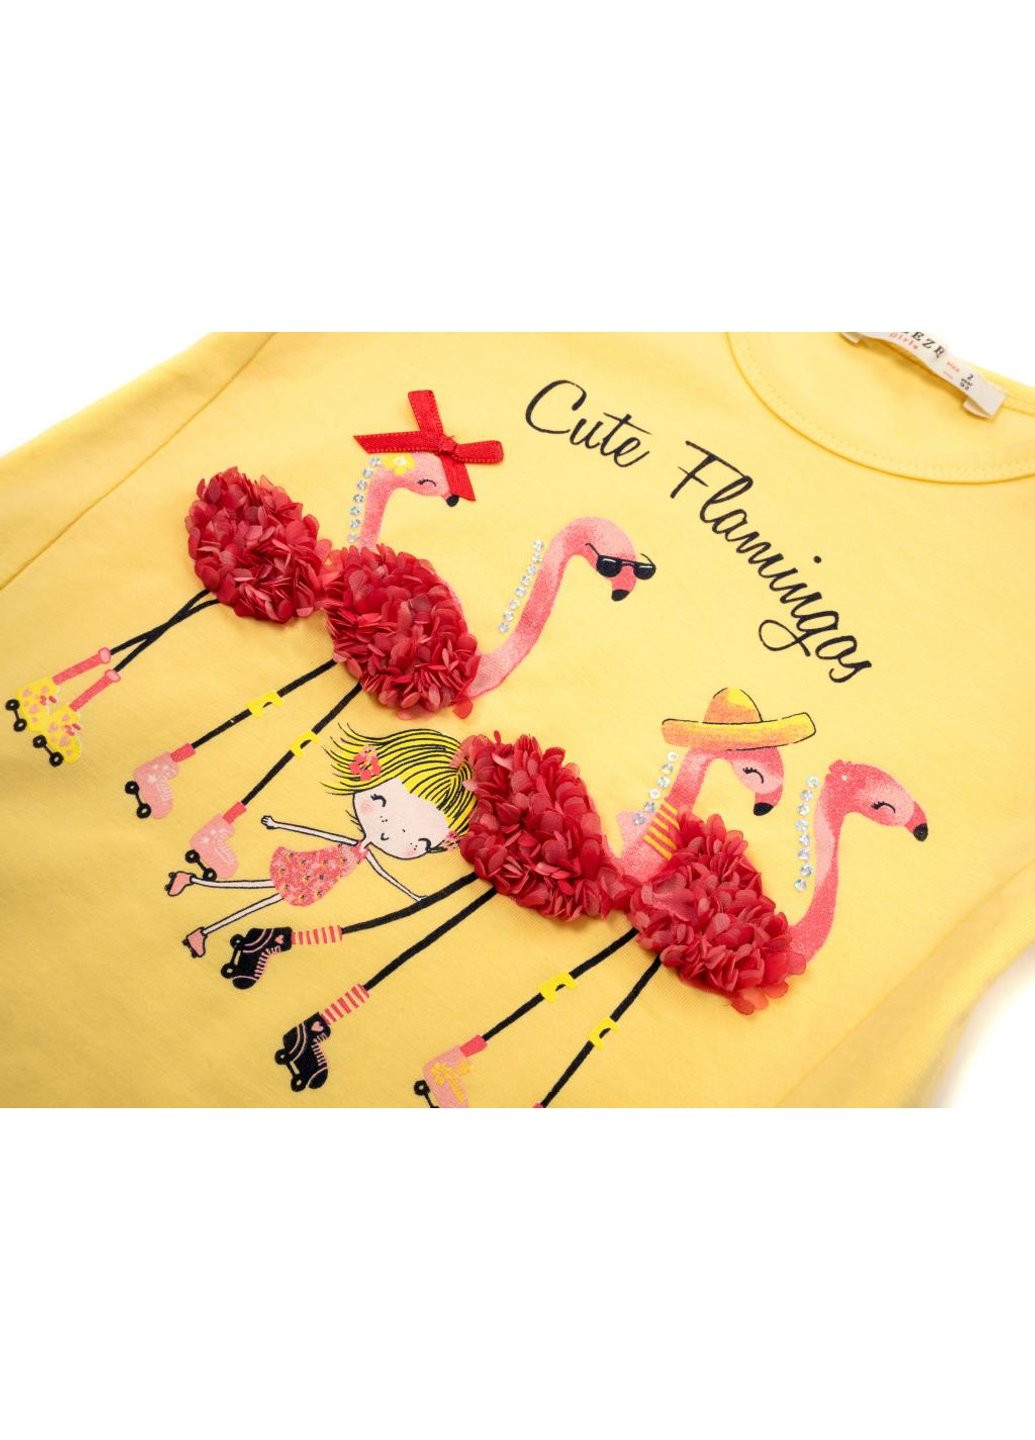 Комбинированная футболка детская с фламинго и капри (13490-98g-yellow) Breeze